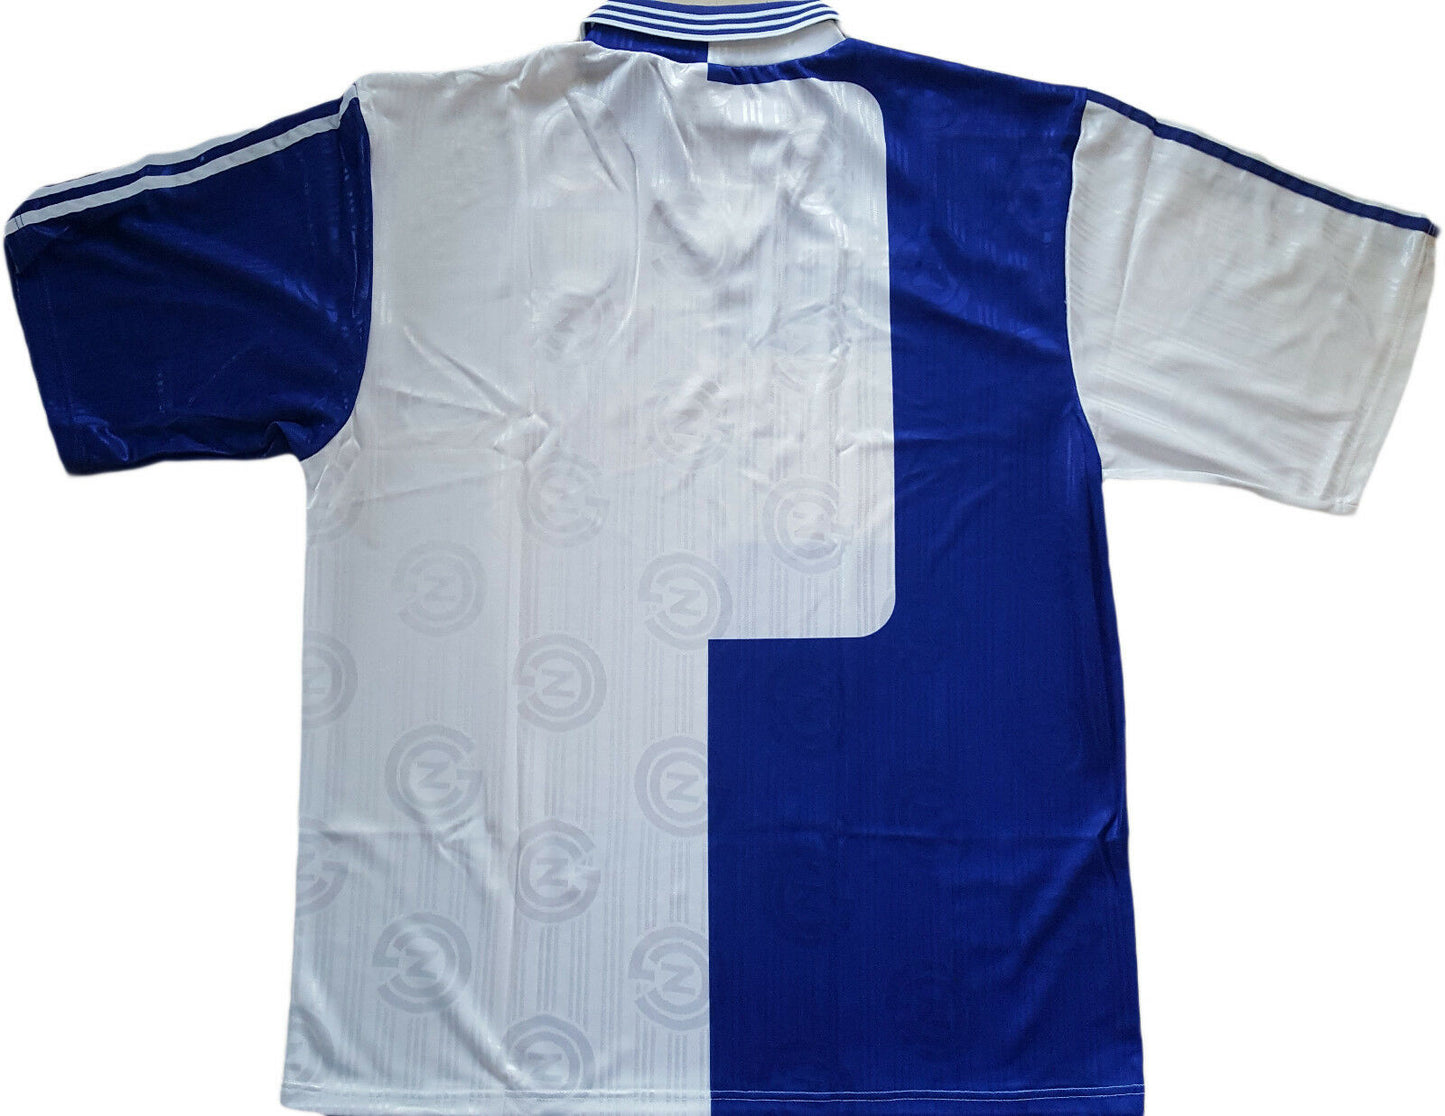 vintage adidas jersey Grassoppher Stock shirt Zurich 1997 90s maglia camiseta